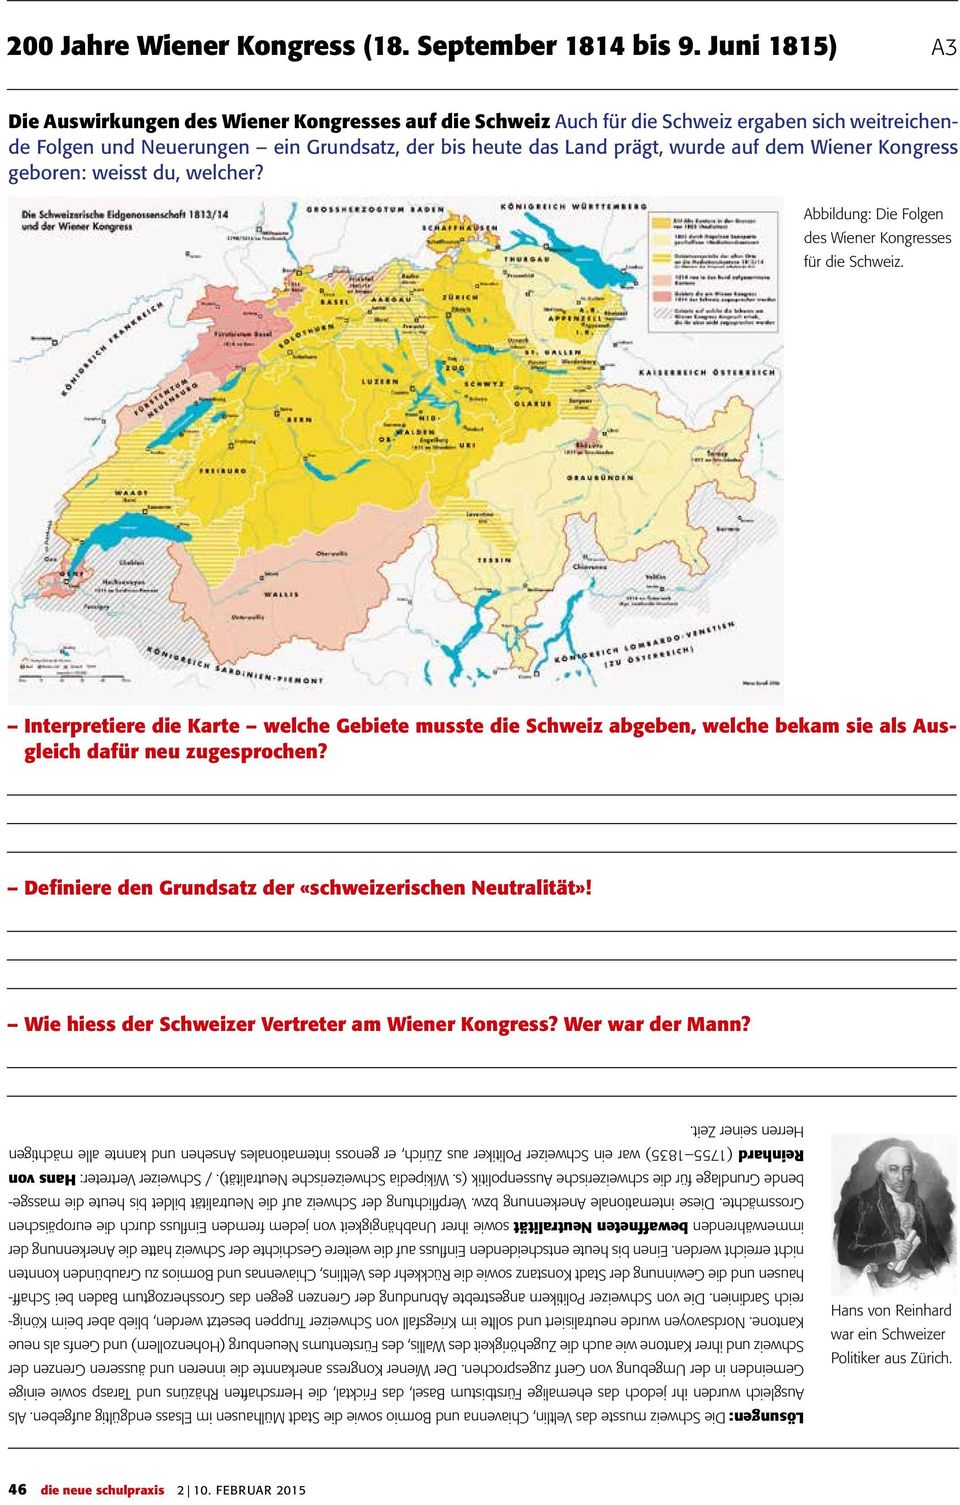 Wiener Kongress geboren: weisst du, welcher? Abbildung: Die Folgen des Wiener Kongresses für die Schweiz.